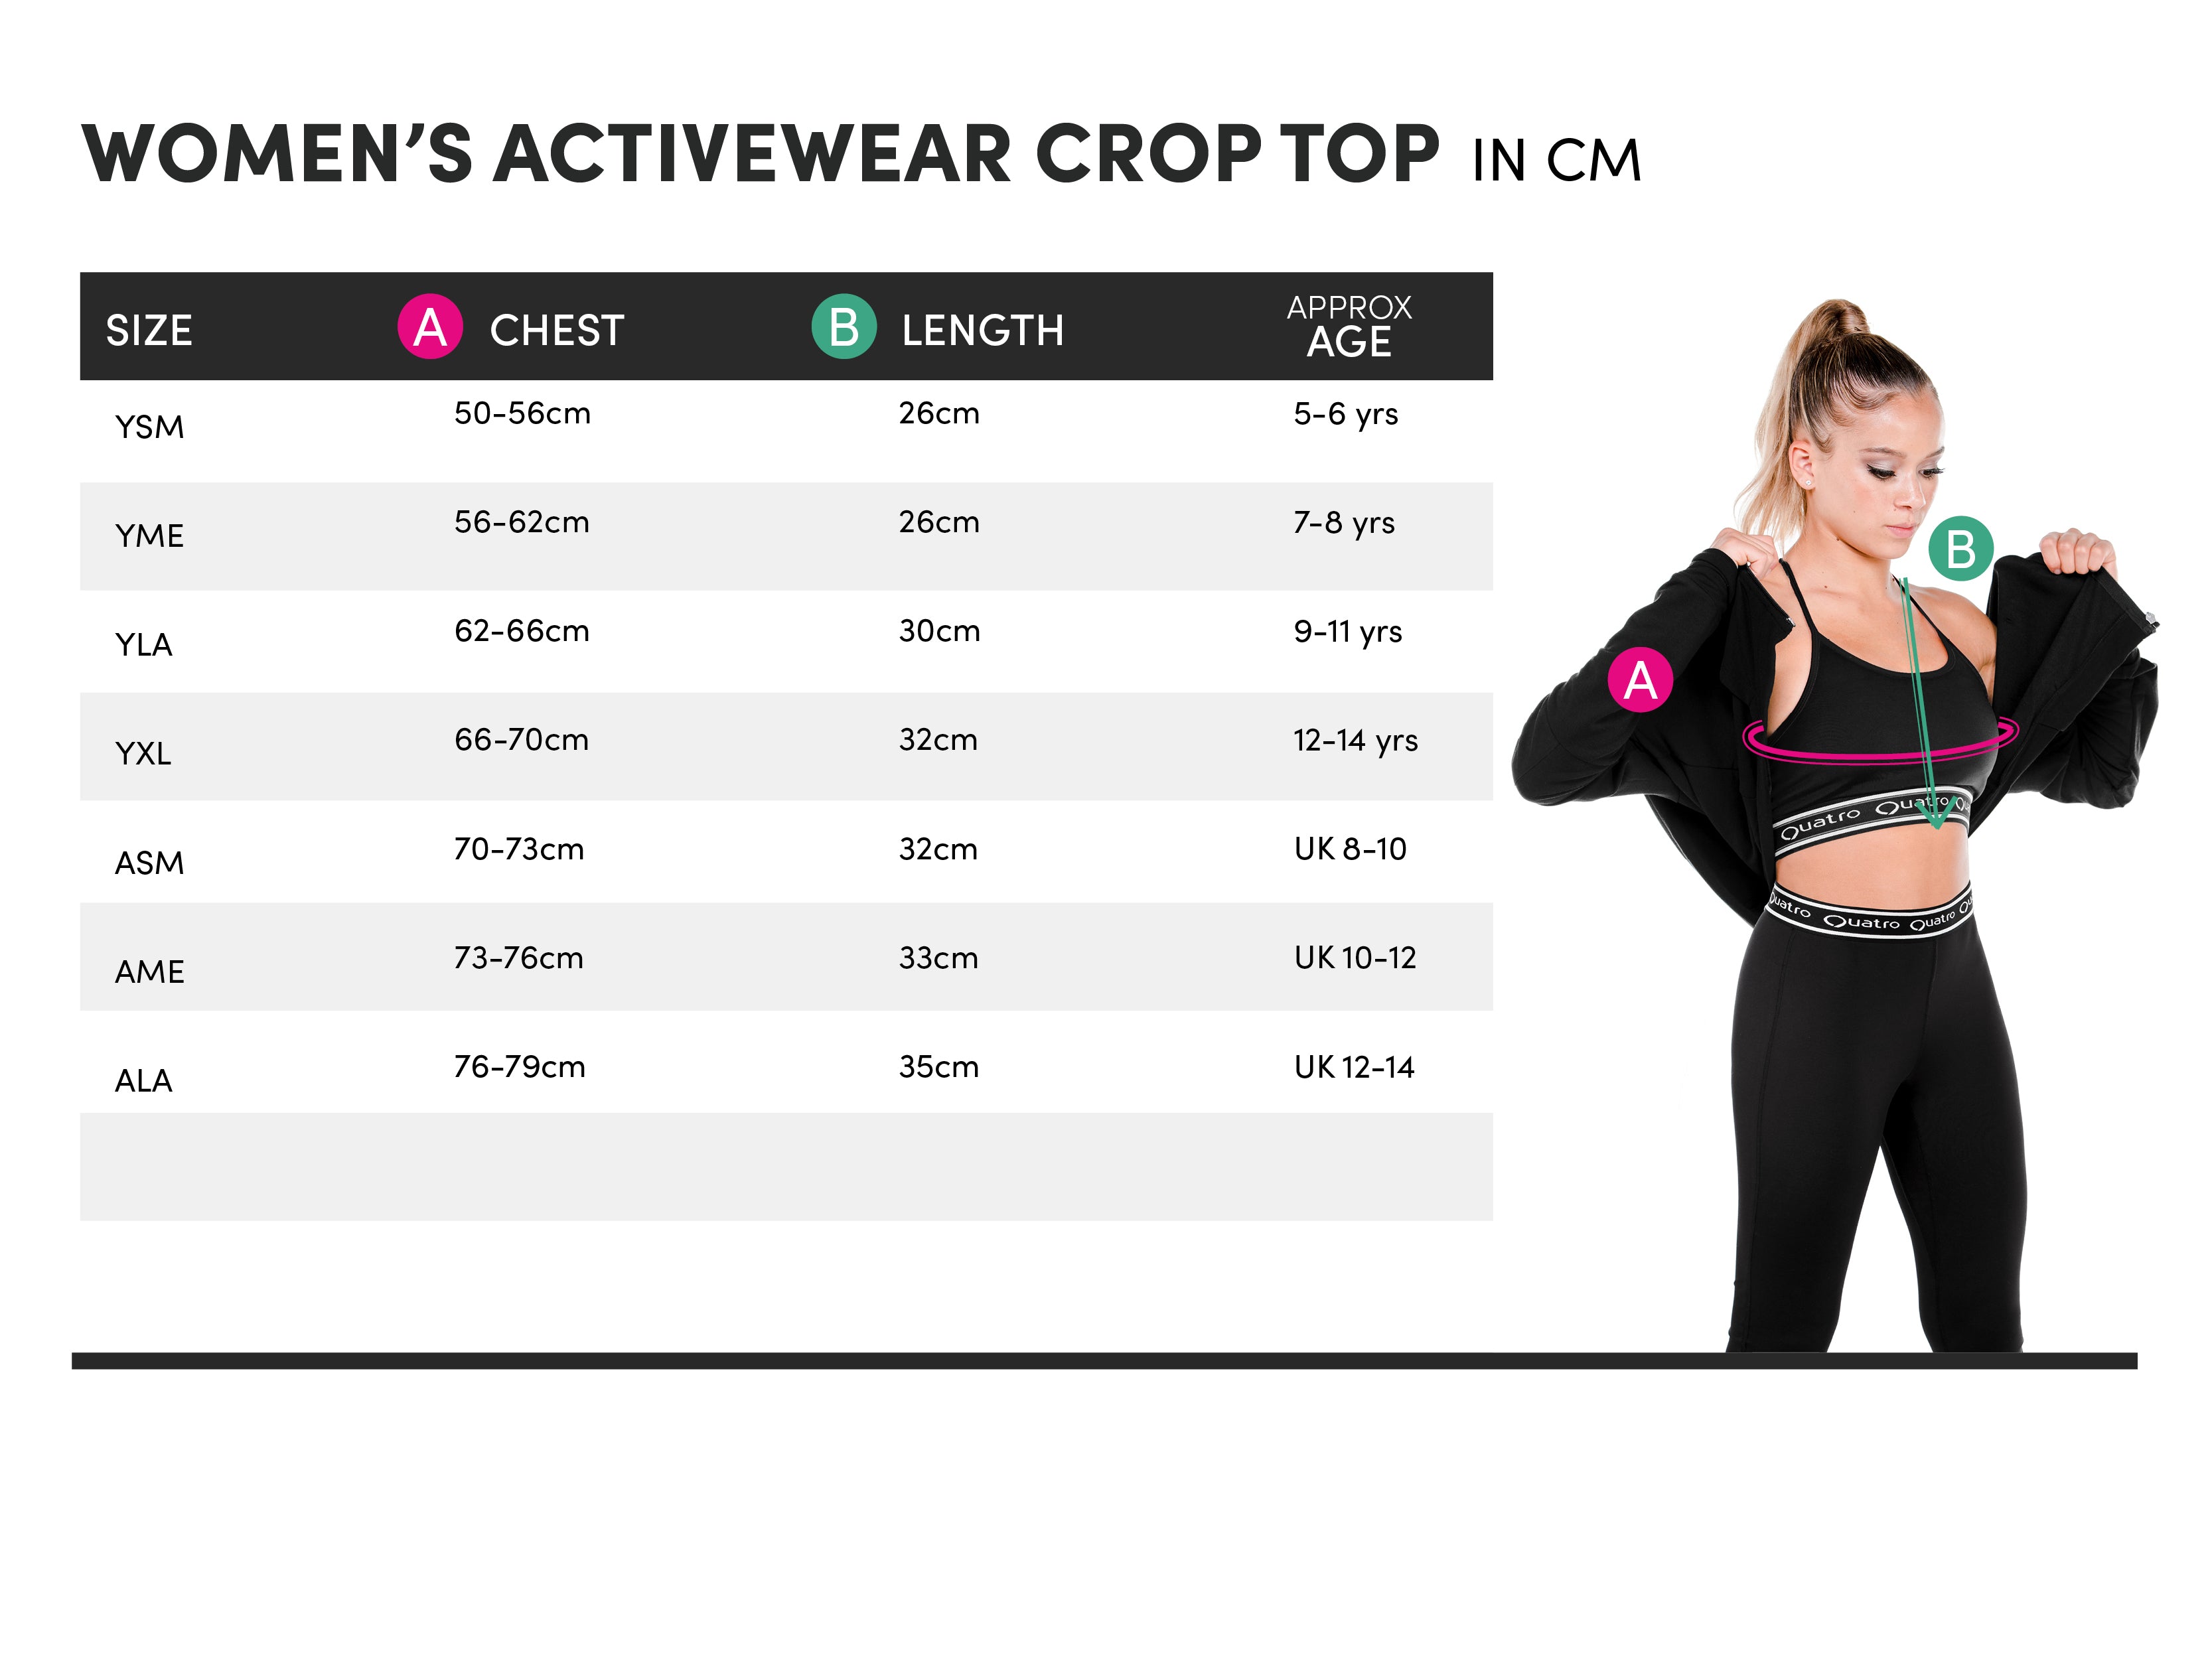 https://us.quatrogymnastics.com/cdn/shop/files/Womens-Activewear-Crop-Top-Size-Guide_2.jpg?v=1649414394